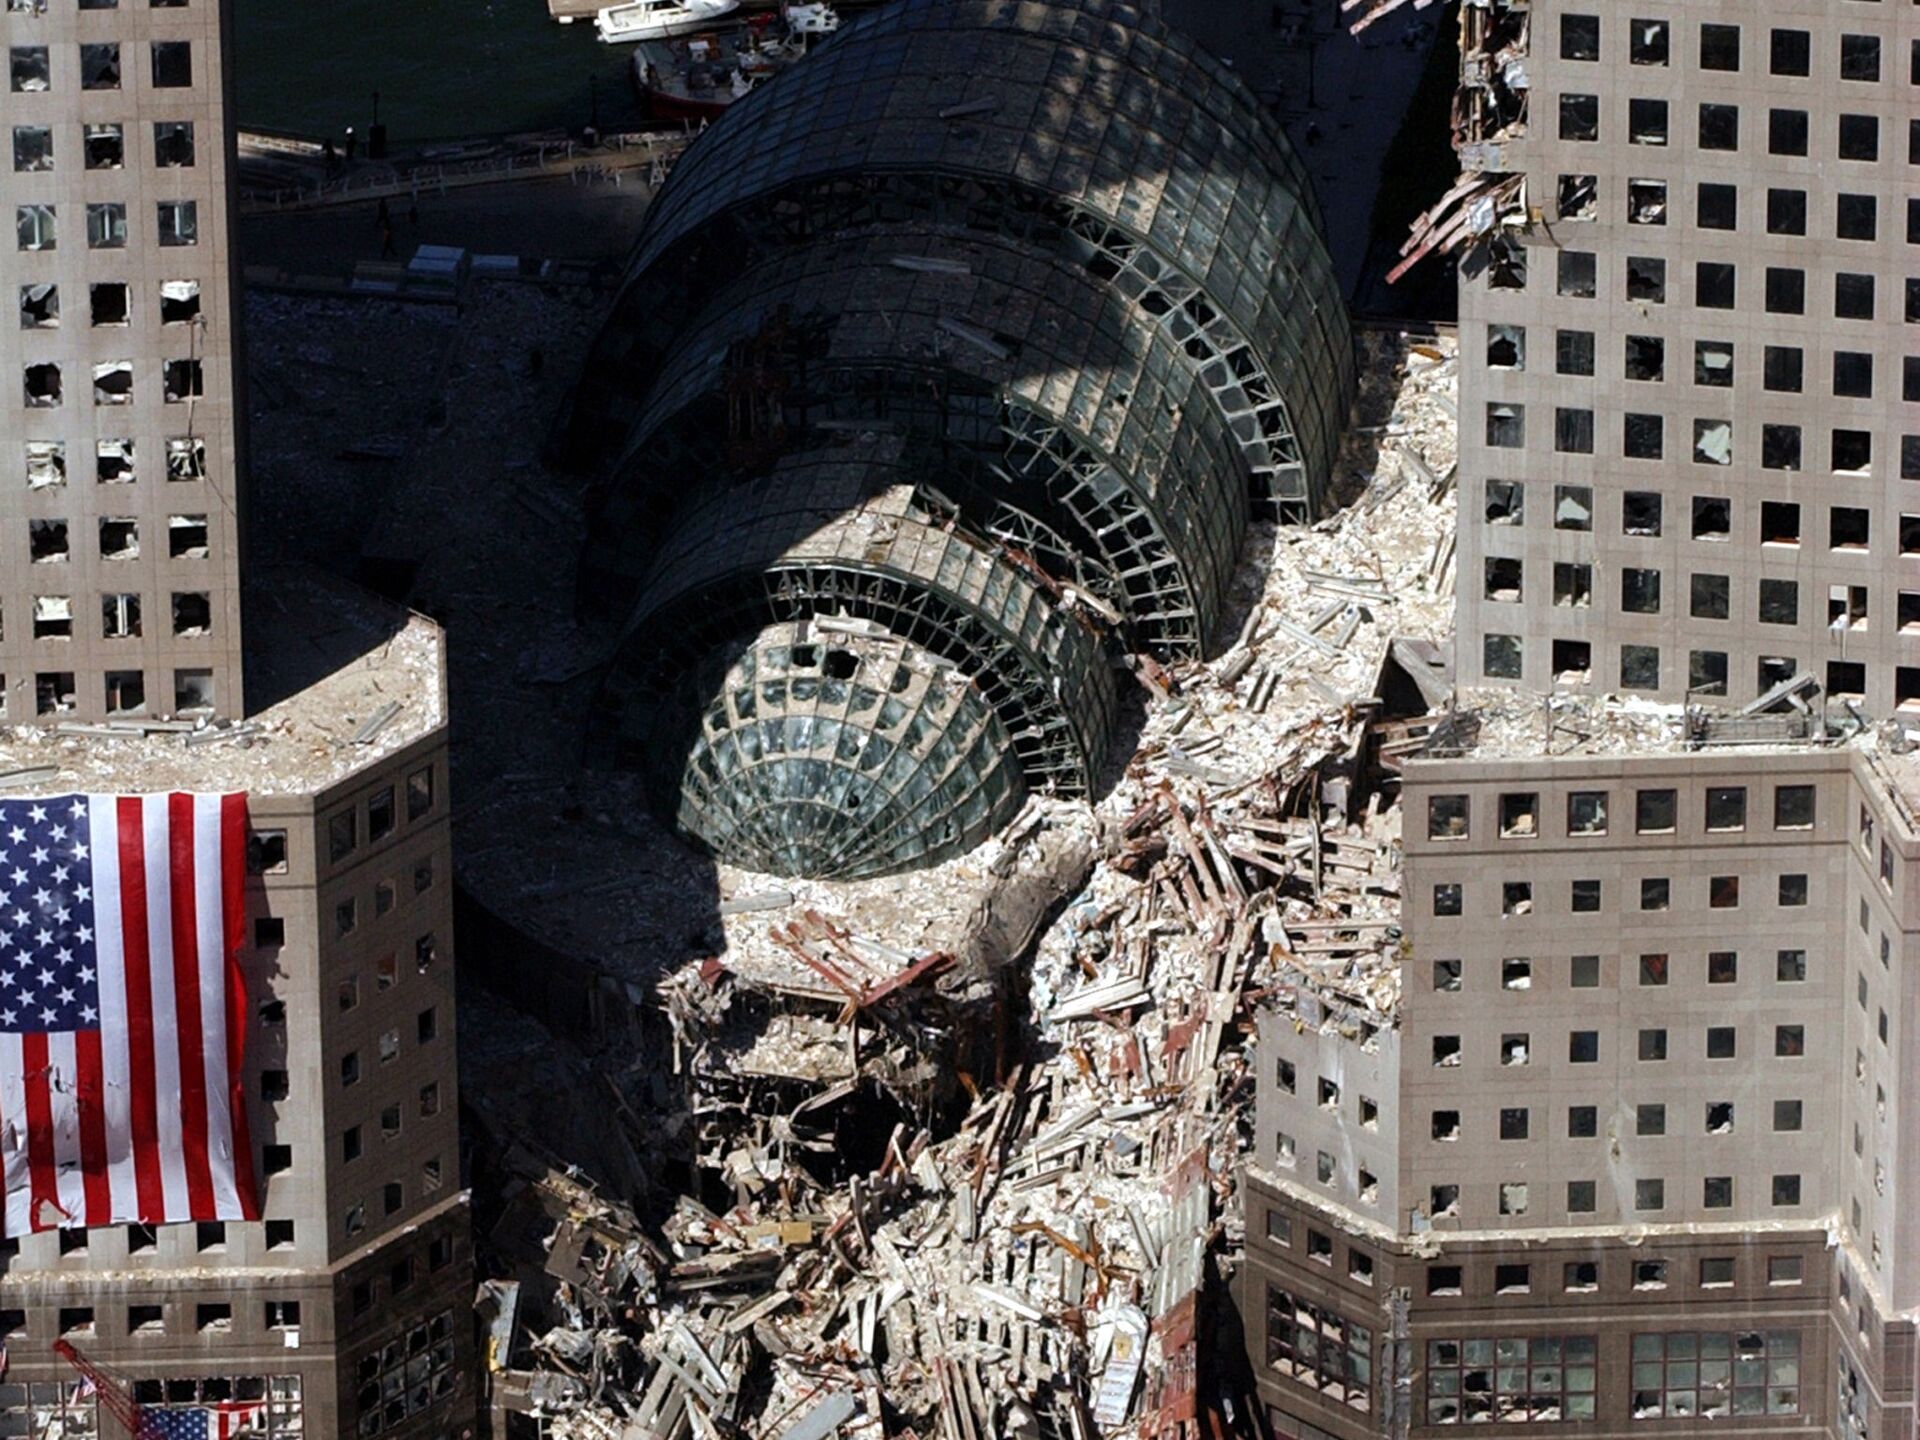 22 ноября 2001. Башни-Близнецы 11 сентября 2001. Всемирный торговый центр в Нью-Йорке 11 сентября 2001.